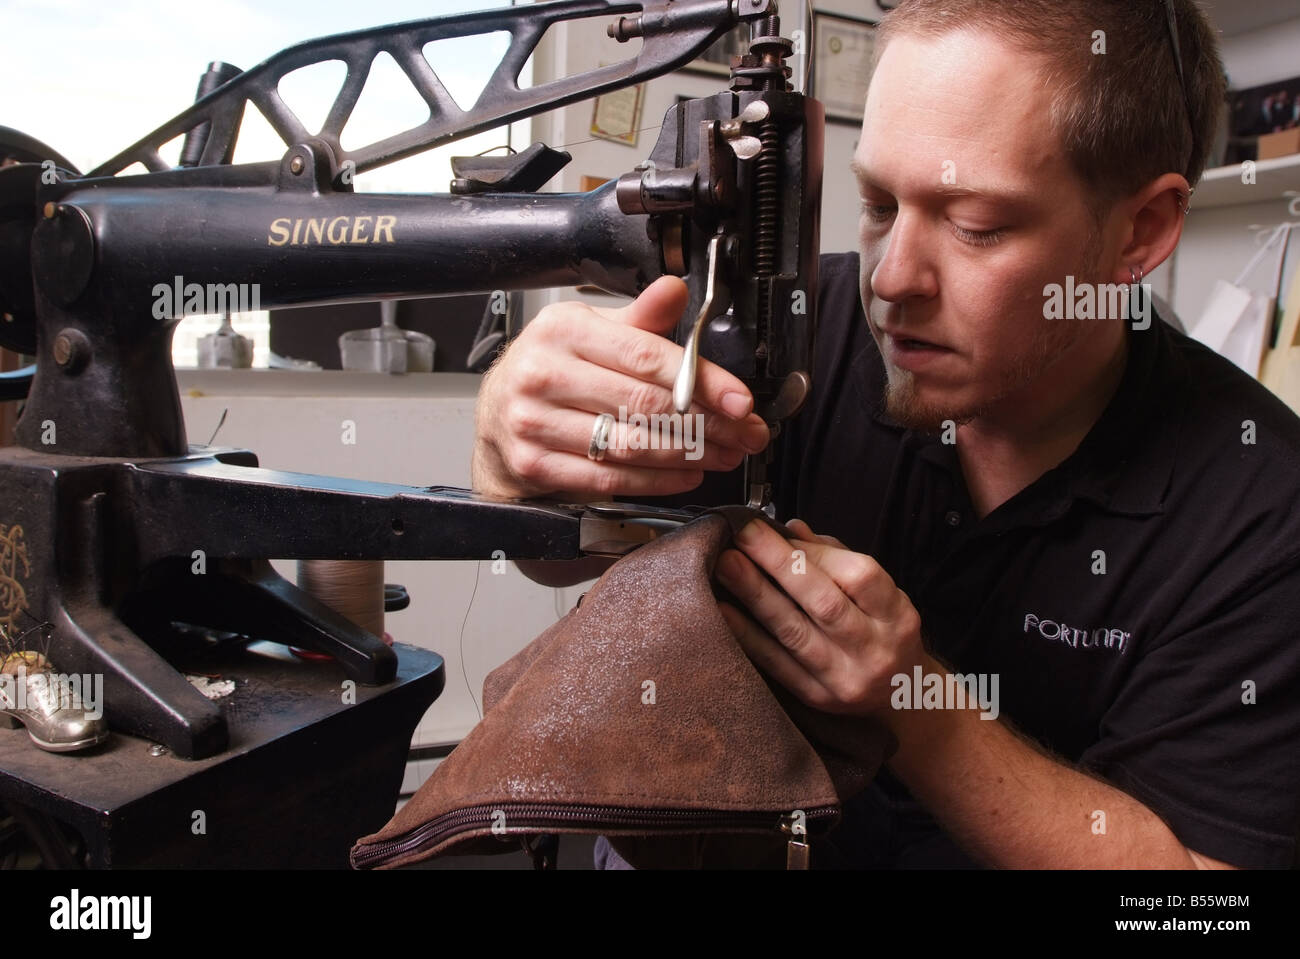 Un hombre utiliza una antigua máquina de coser Singer para la reparación de artículos de cuero en una pequeña tienda en Maryland, EE.UU. Foto de stock